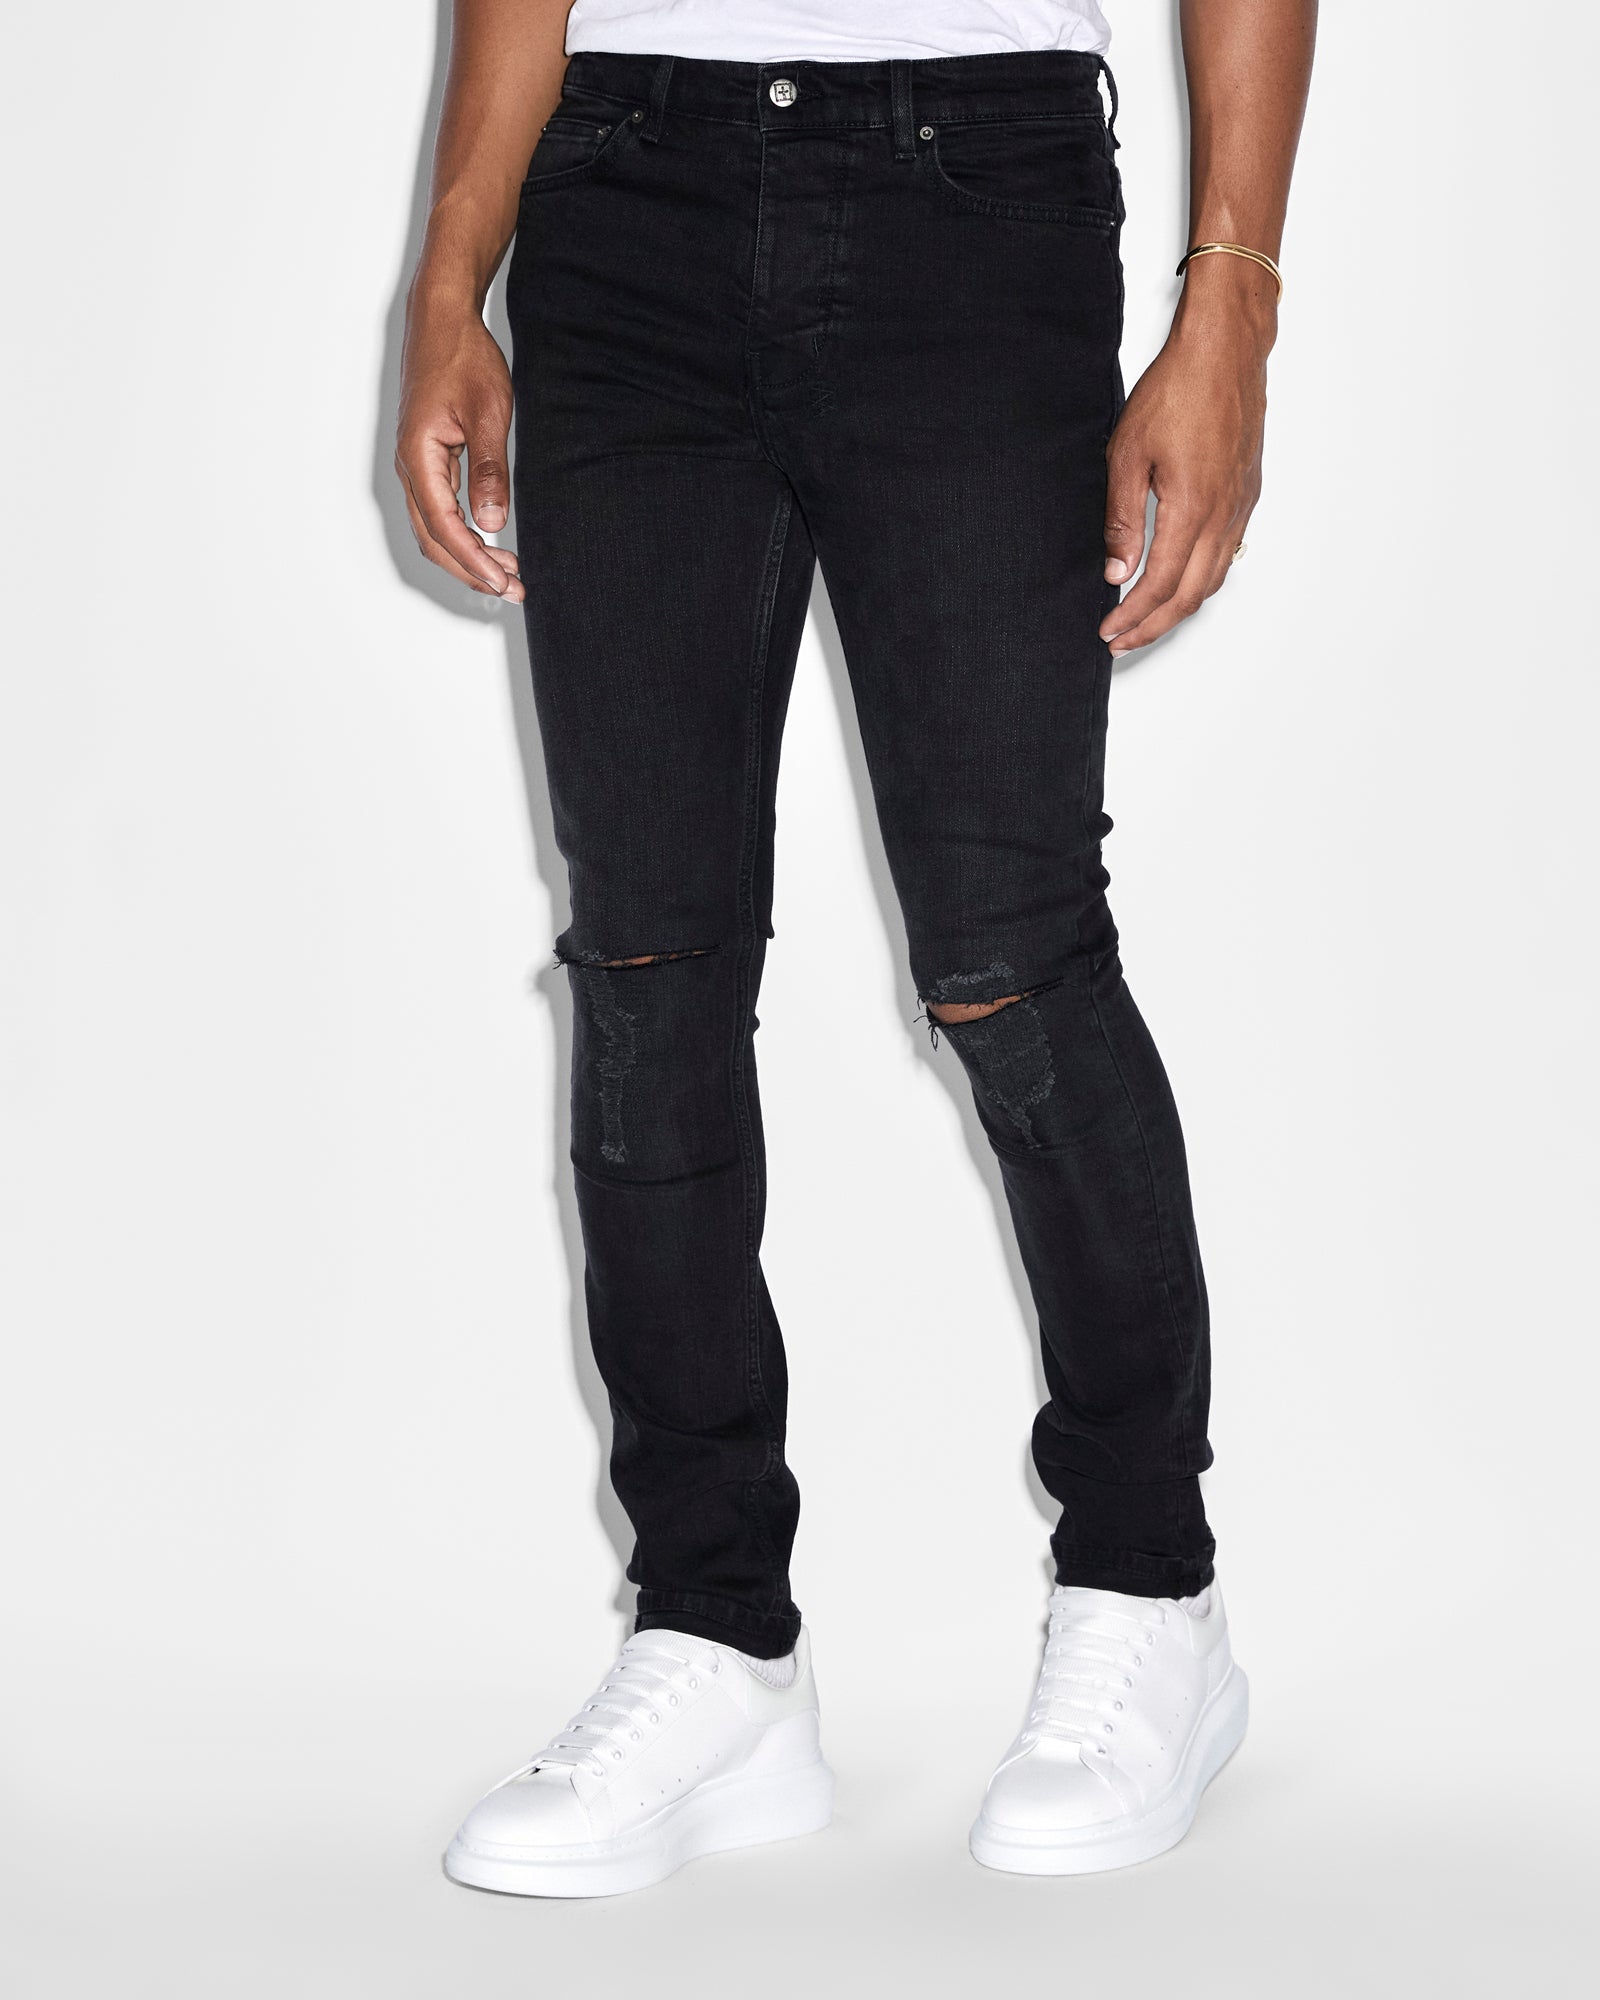 Buy Ksubi Chitch Slim Krow | Krushed Jeans Black ++ | Fit Ksubi Men\'s